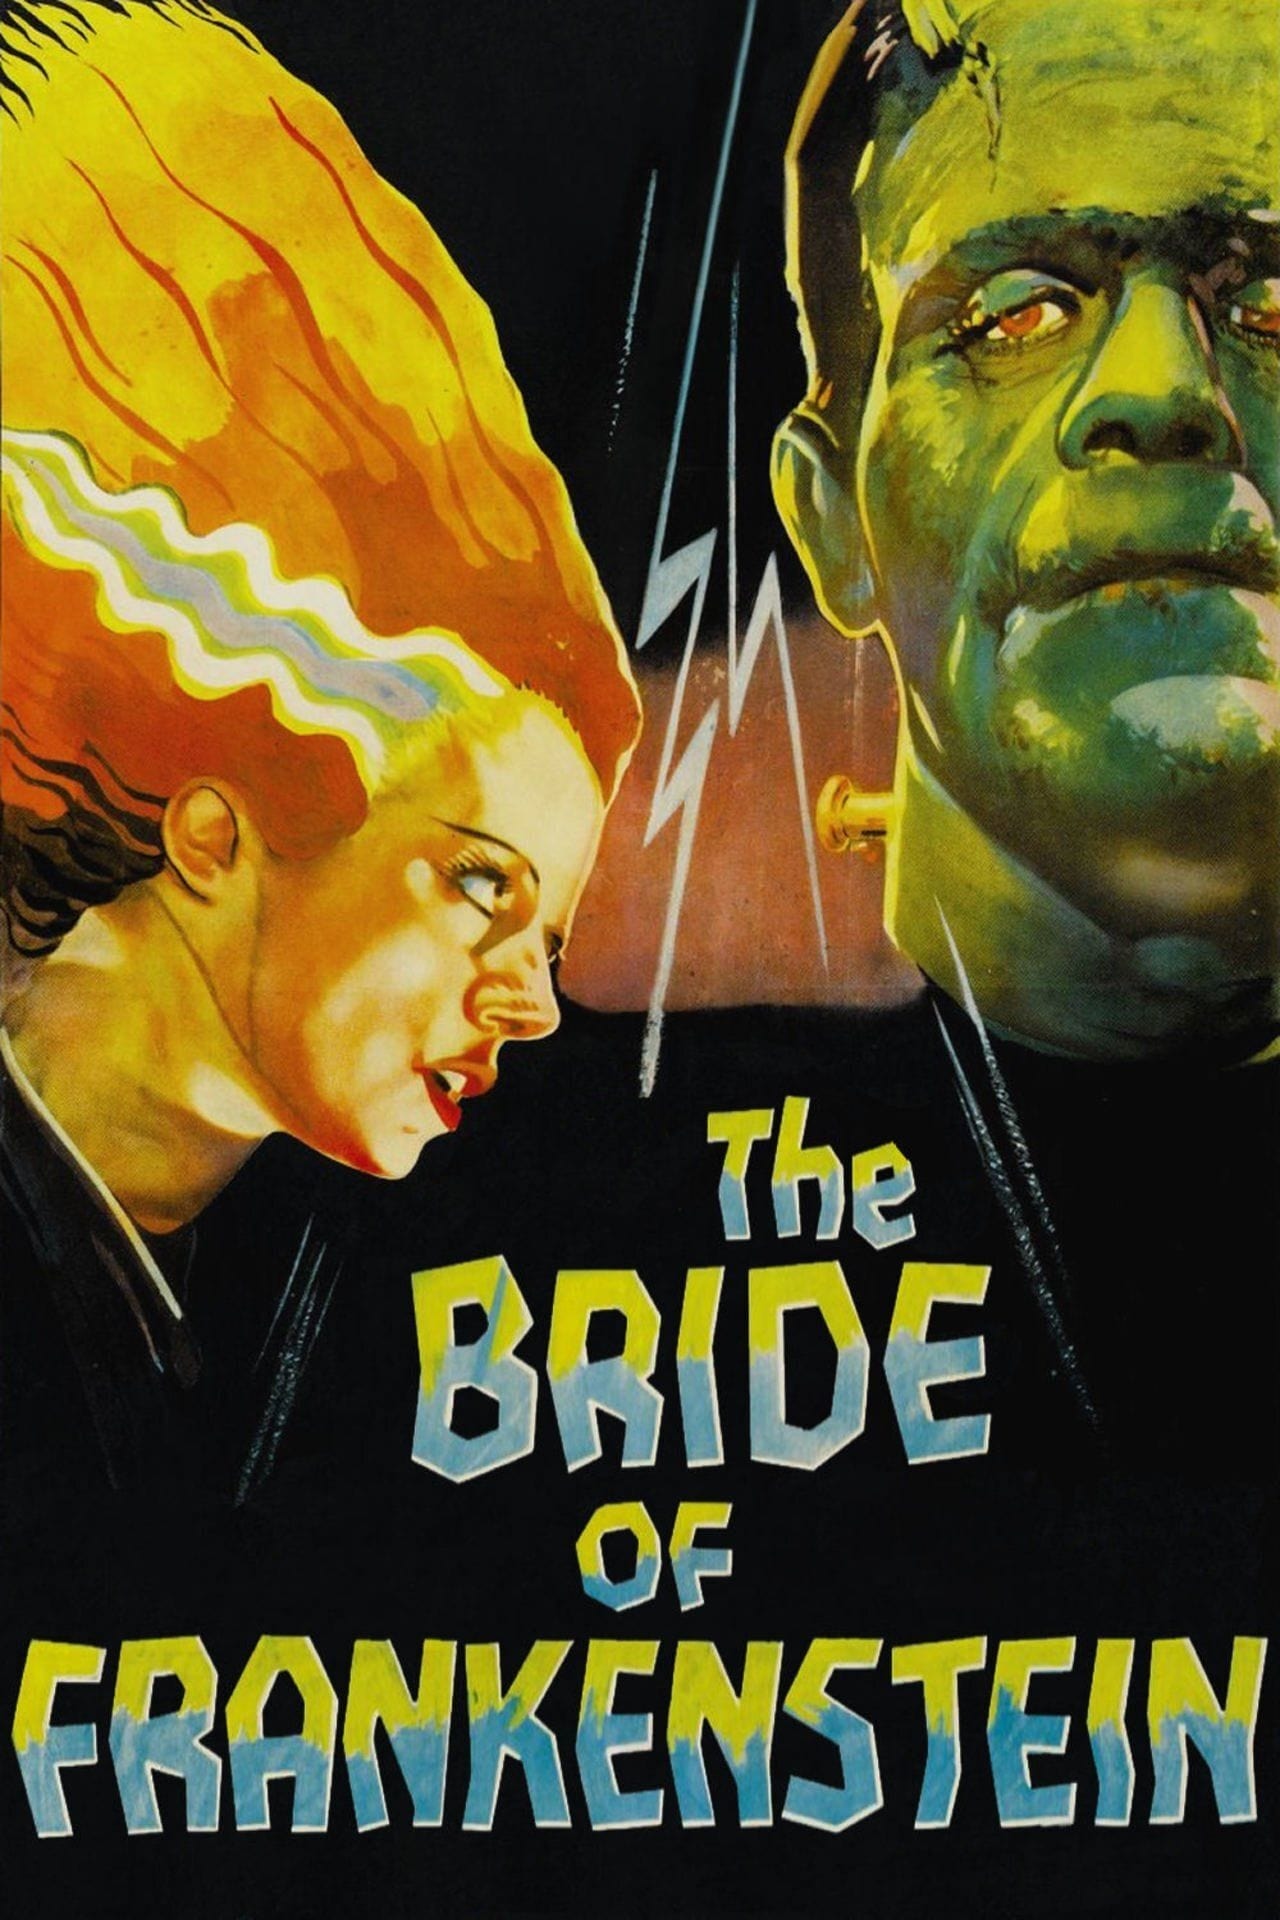 Frankensteins Braut (1935)